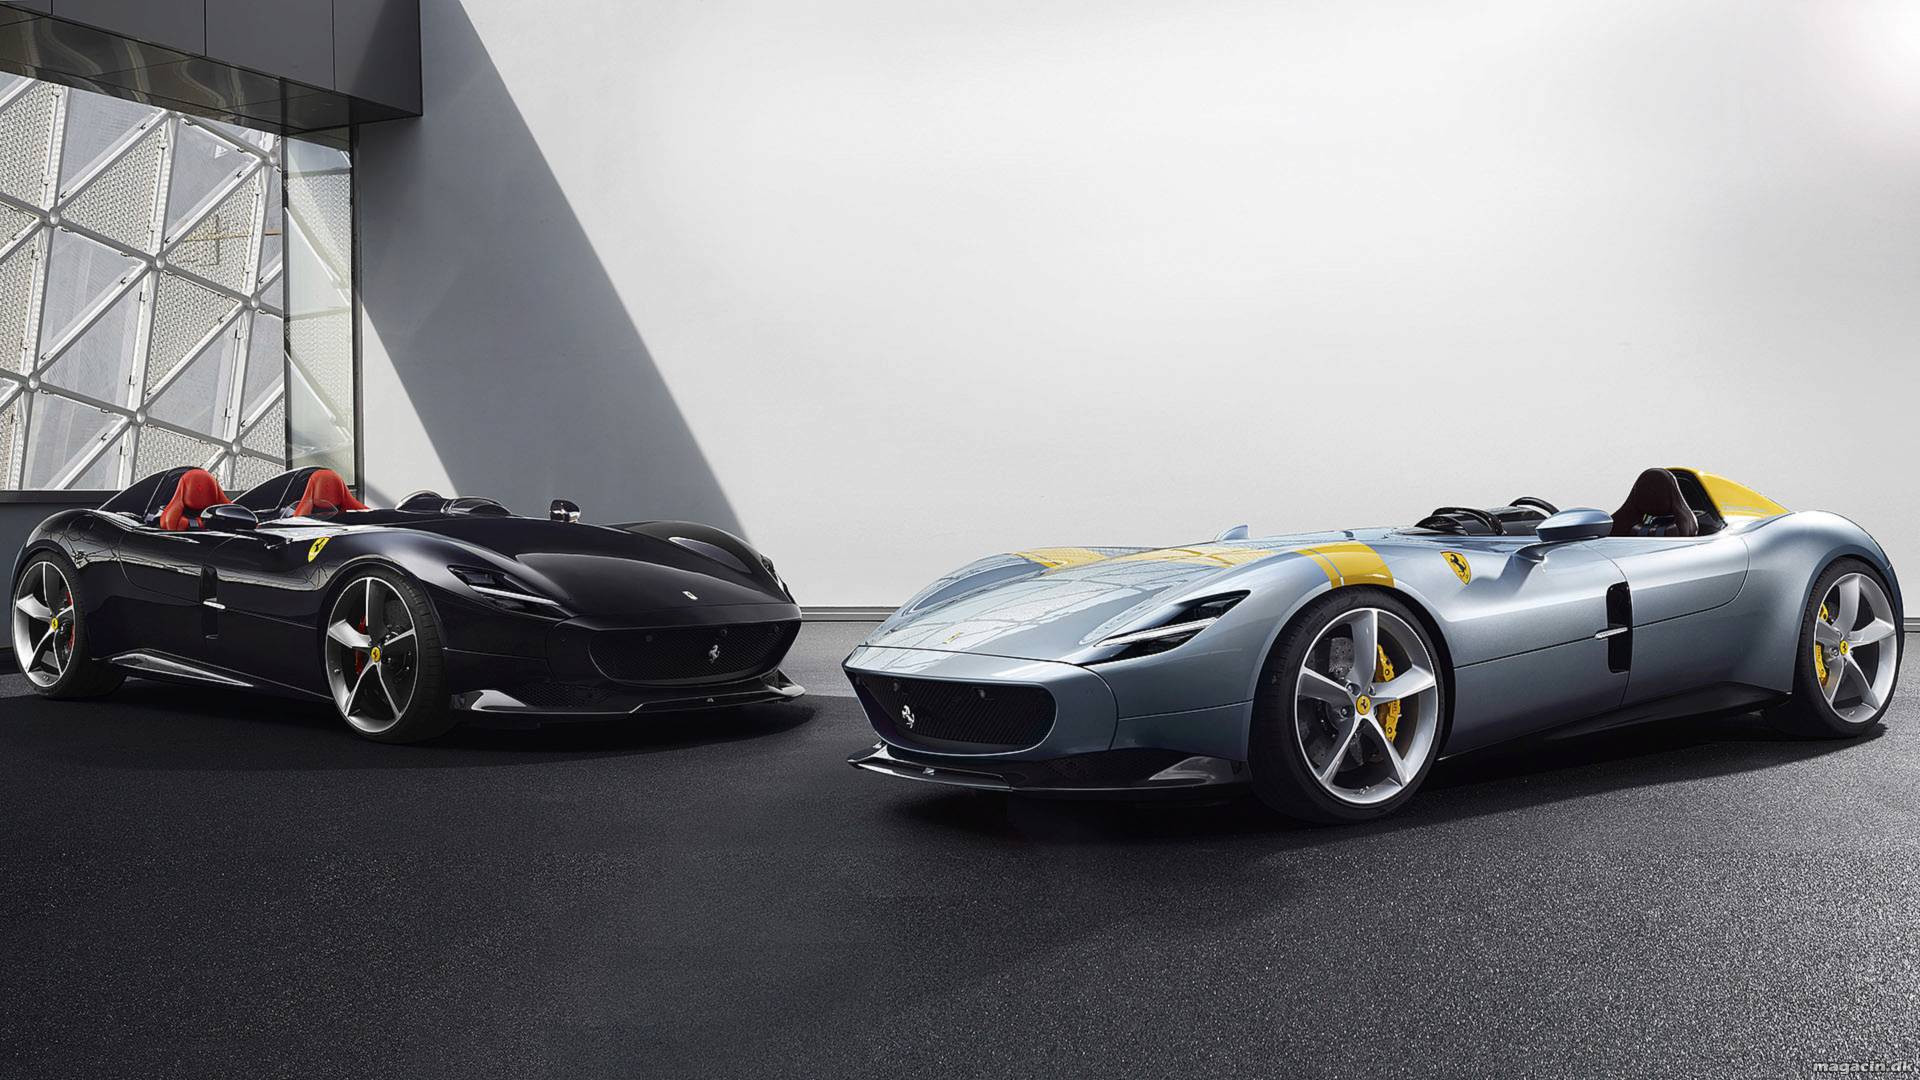 Vil du have en one-of-a-kind Ferrari?